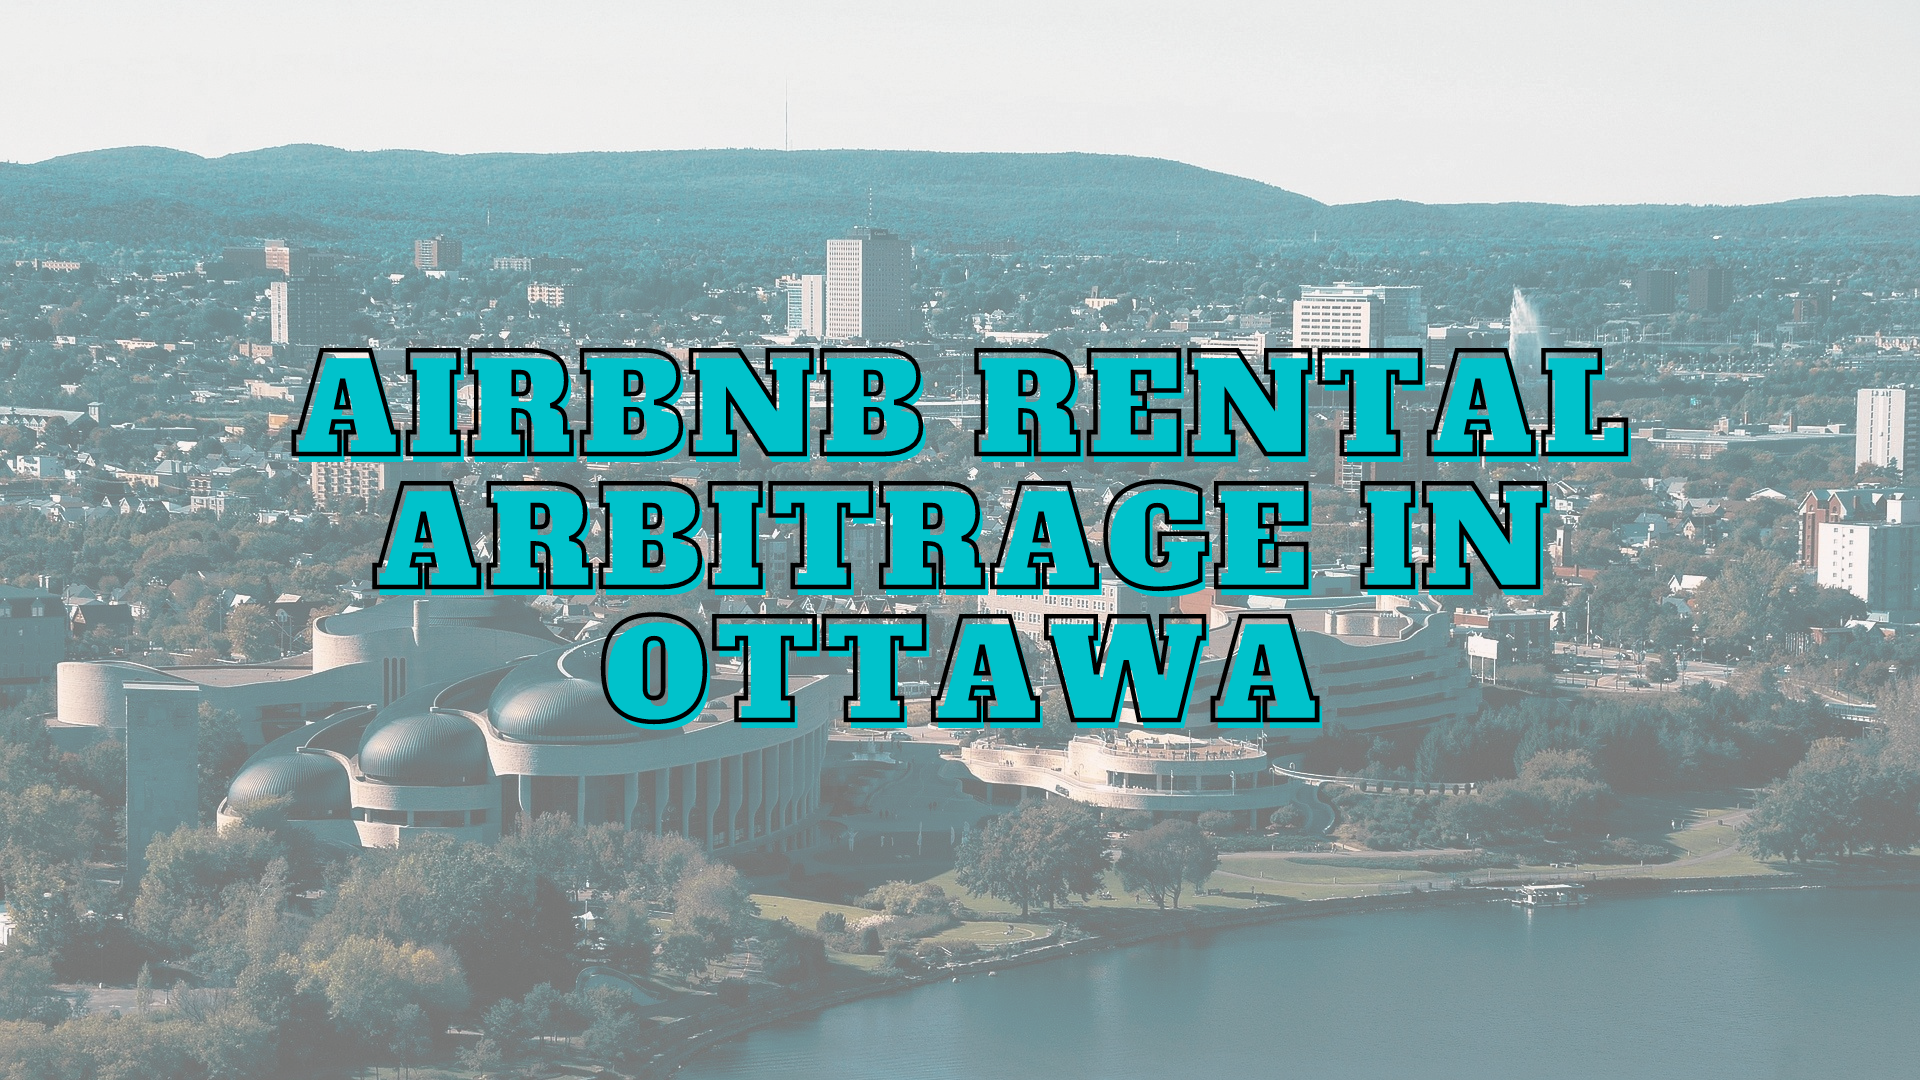 Ottawa airbnb rental arbitrage